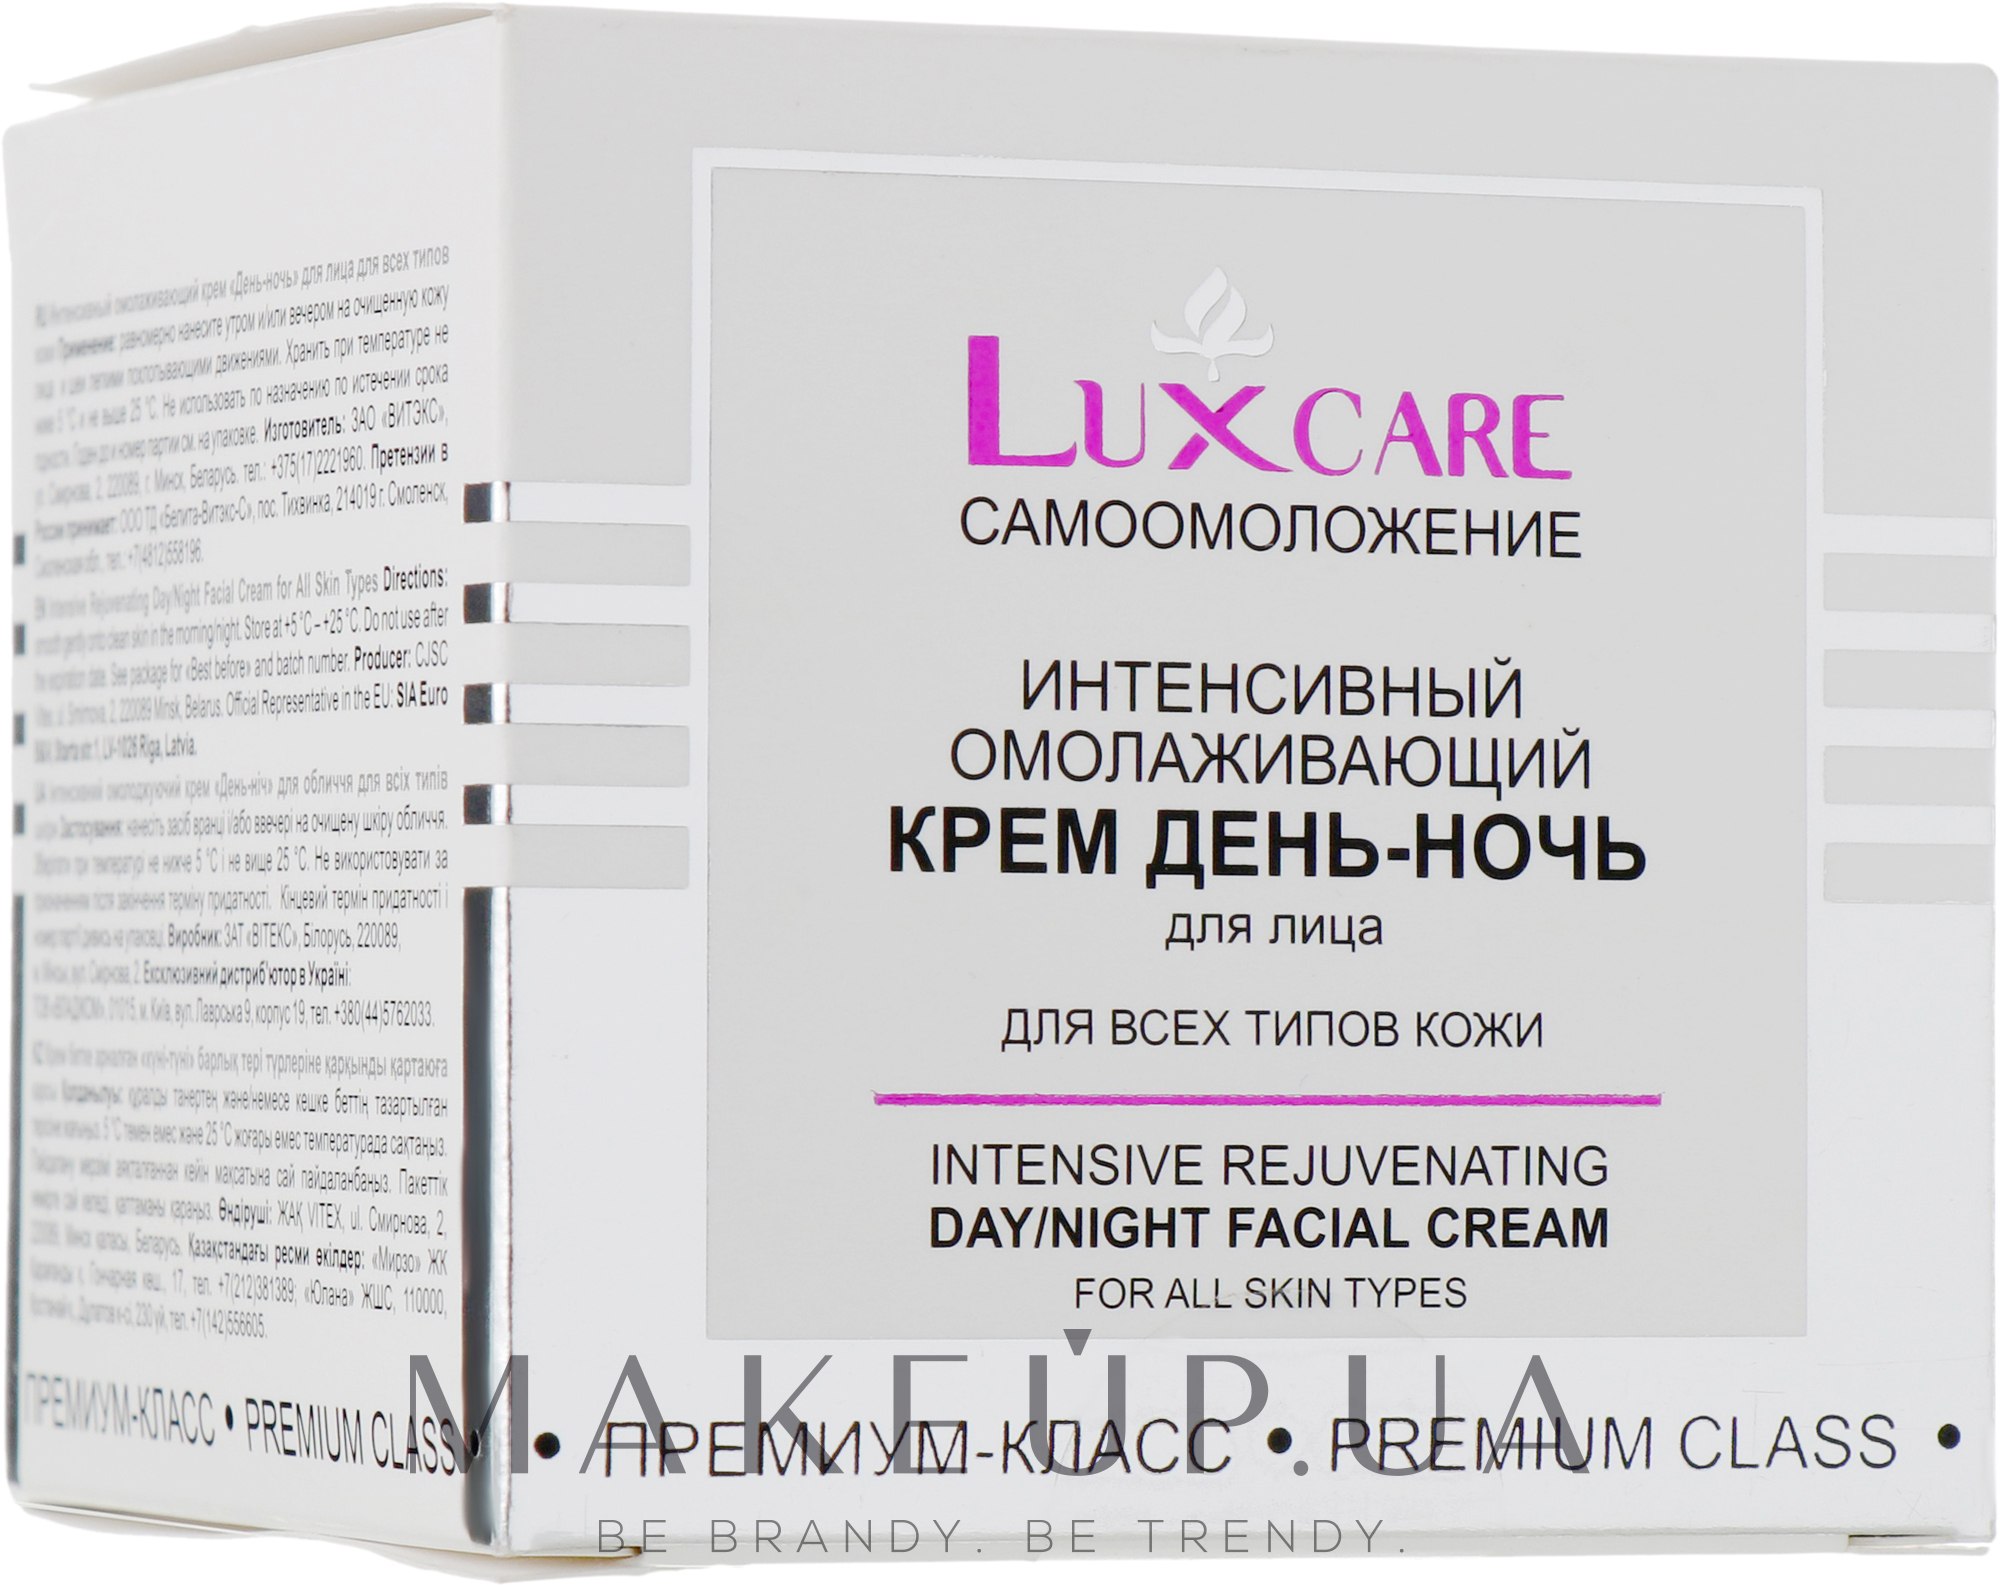 Крем день ночь отзывы. LUXCARE интенсивный омолаживающий крем. Lux Care Самоомоложение крем дневной для лица. Крем день ночь Lux Care. Белорусский крем интенсивное омоложение Lux Care.